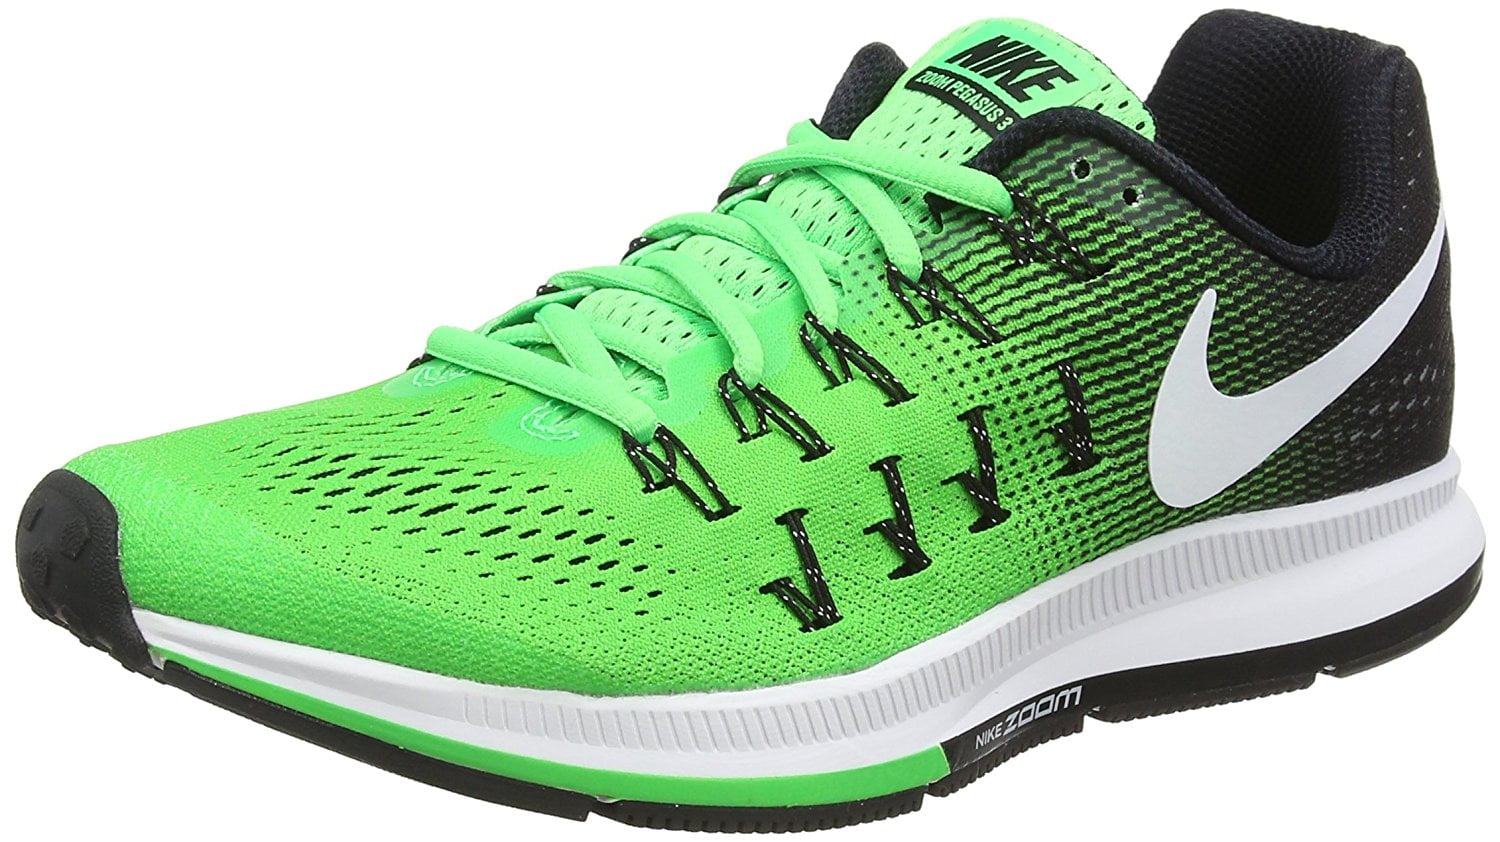 Nike Zoom Pegasus 33 Running Shoe, Rage Green/White-Black, 13 - Walmart.com